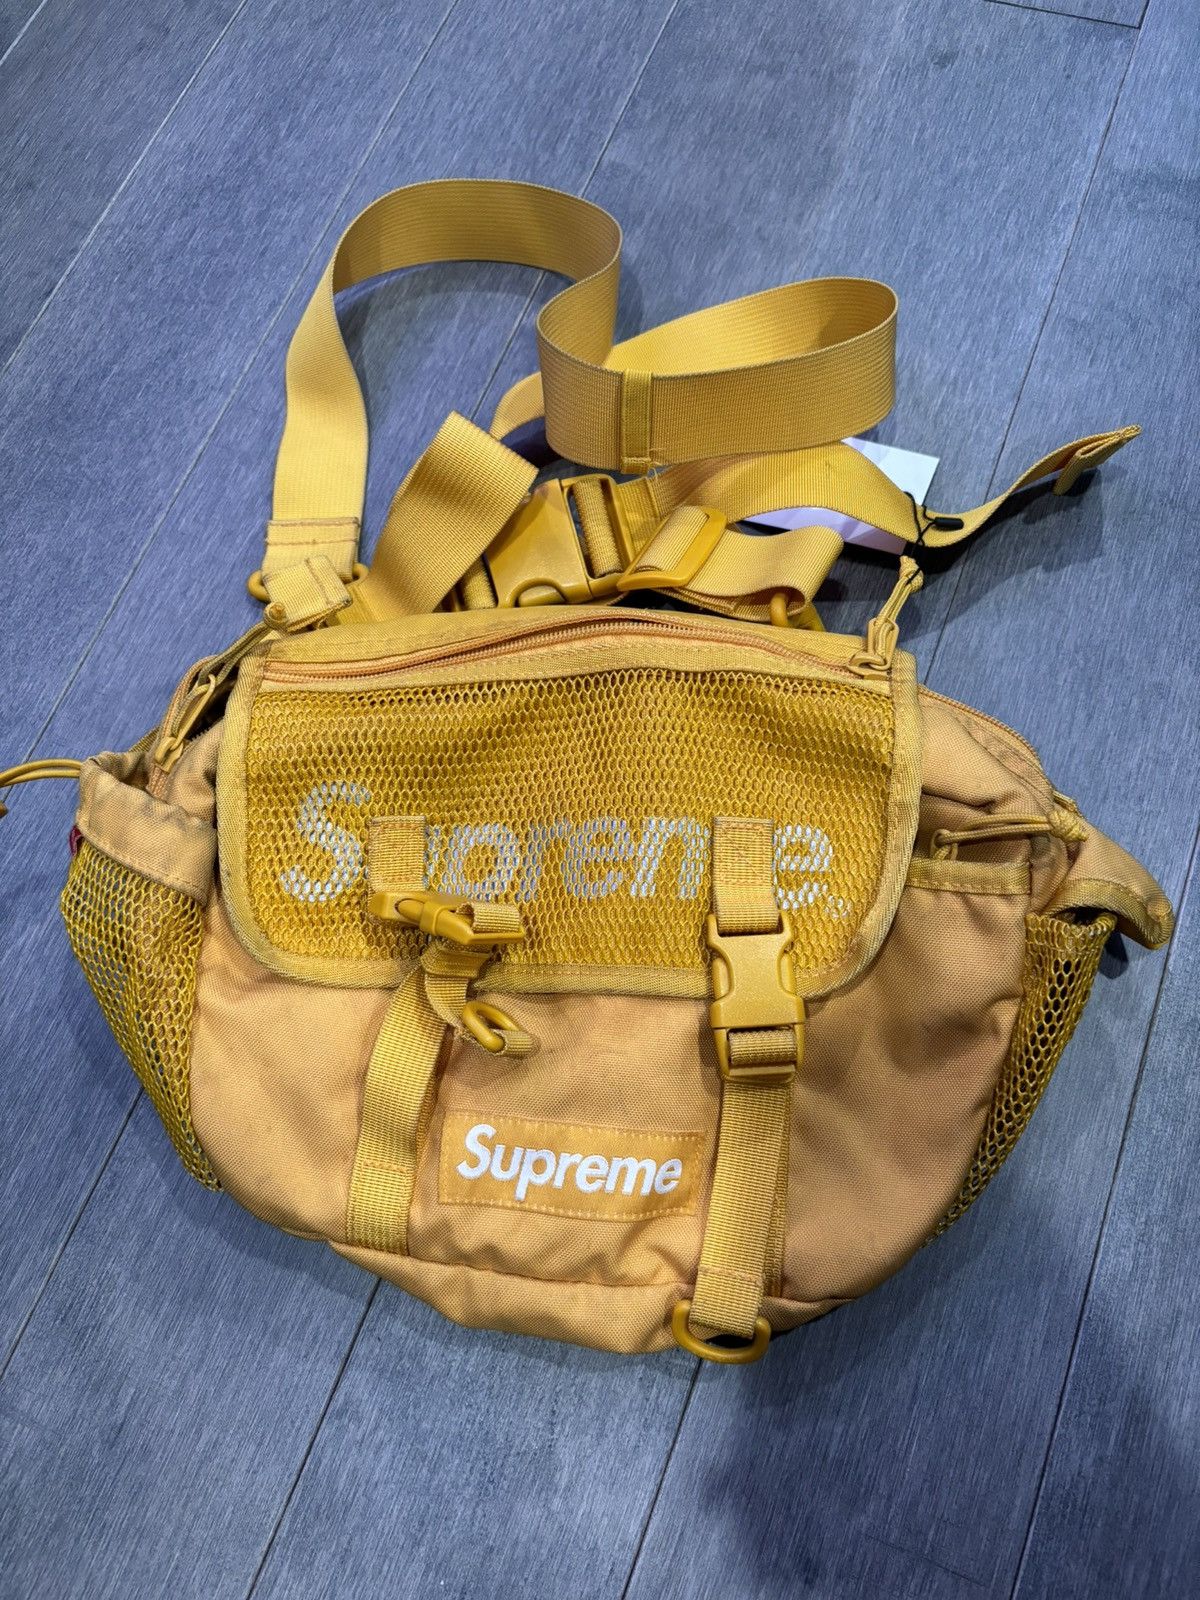 Supreme Supreme Waist Bag yellow | Grailed